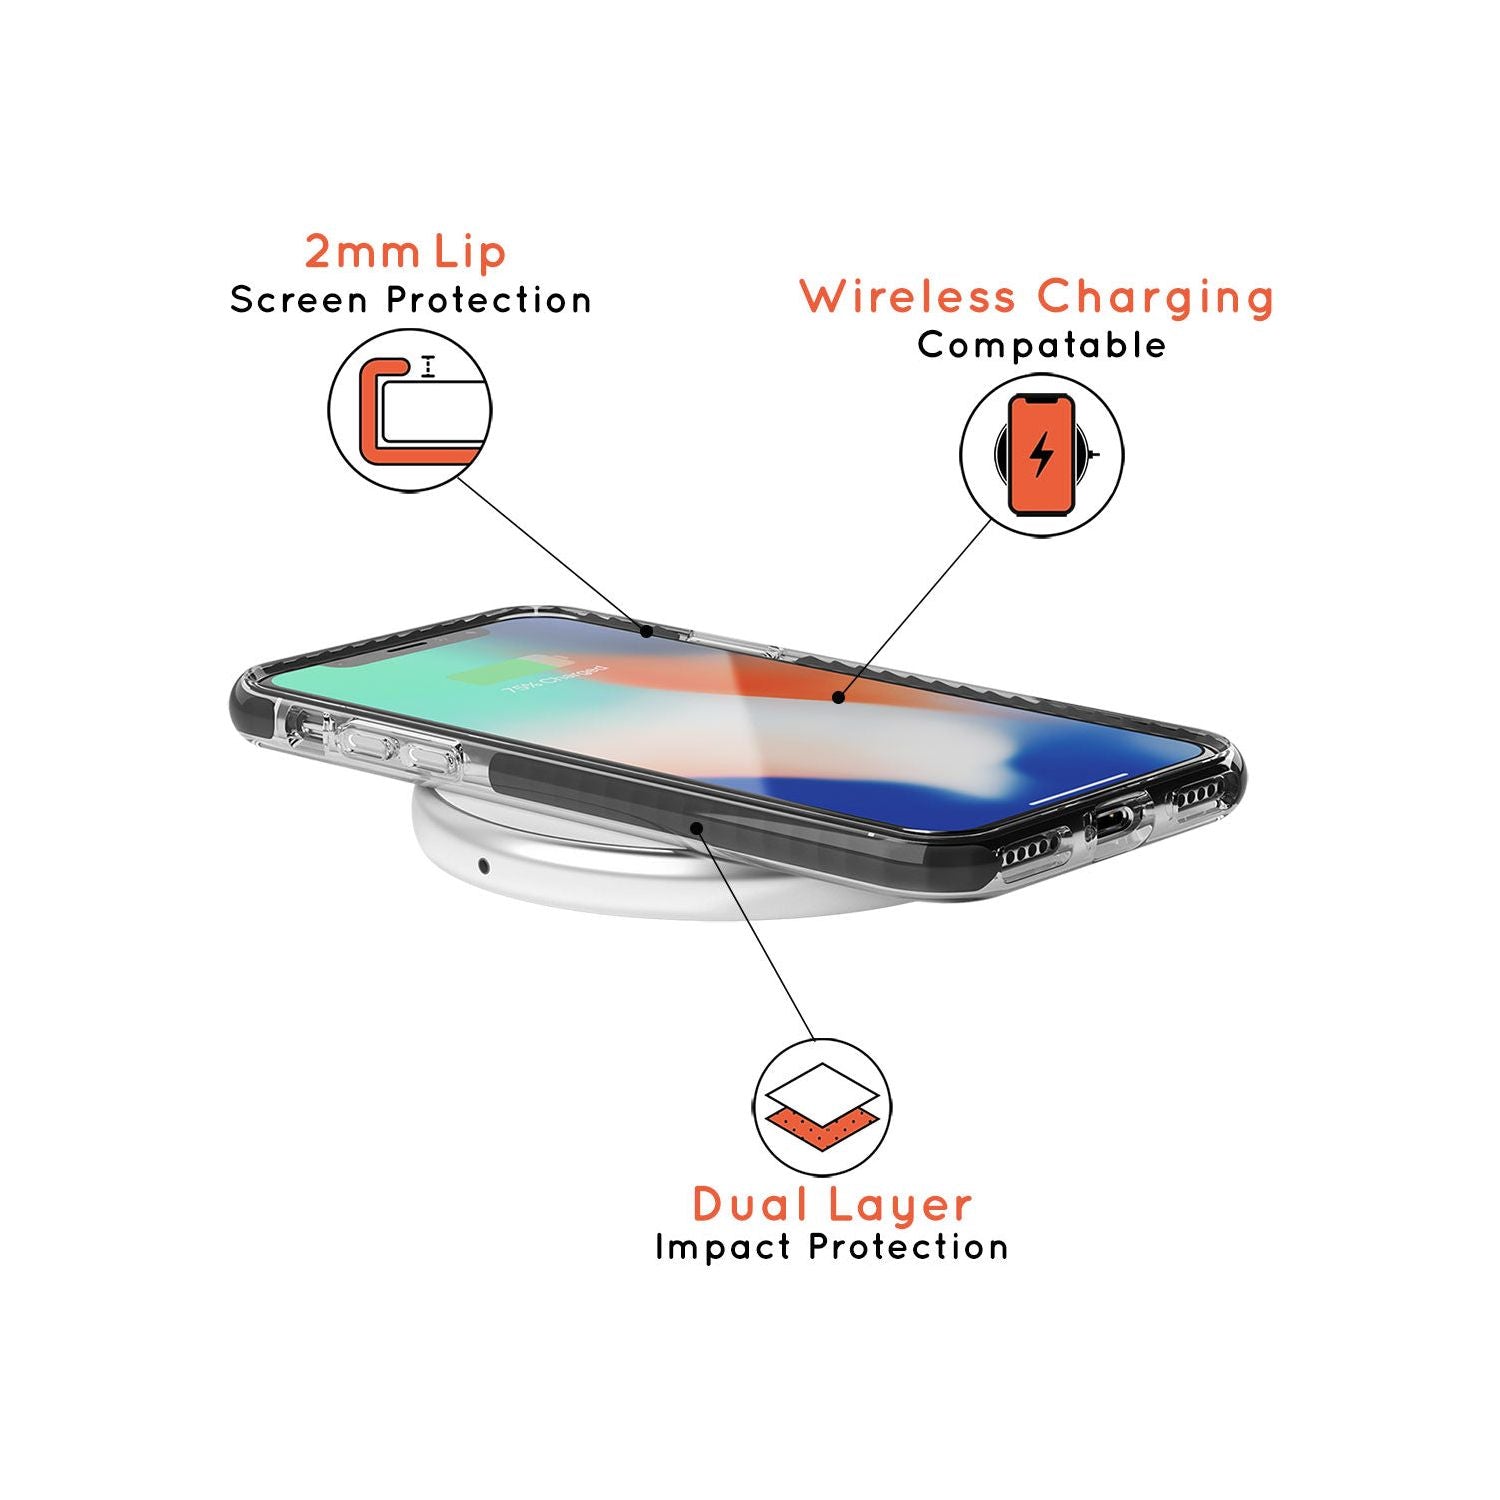 Aquarius Emblem - Transparent Design Black Impact Phone Case for iPhone SE 8 7 Plus